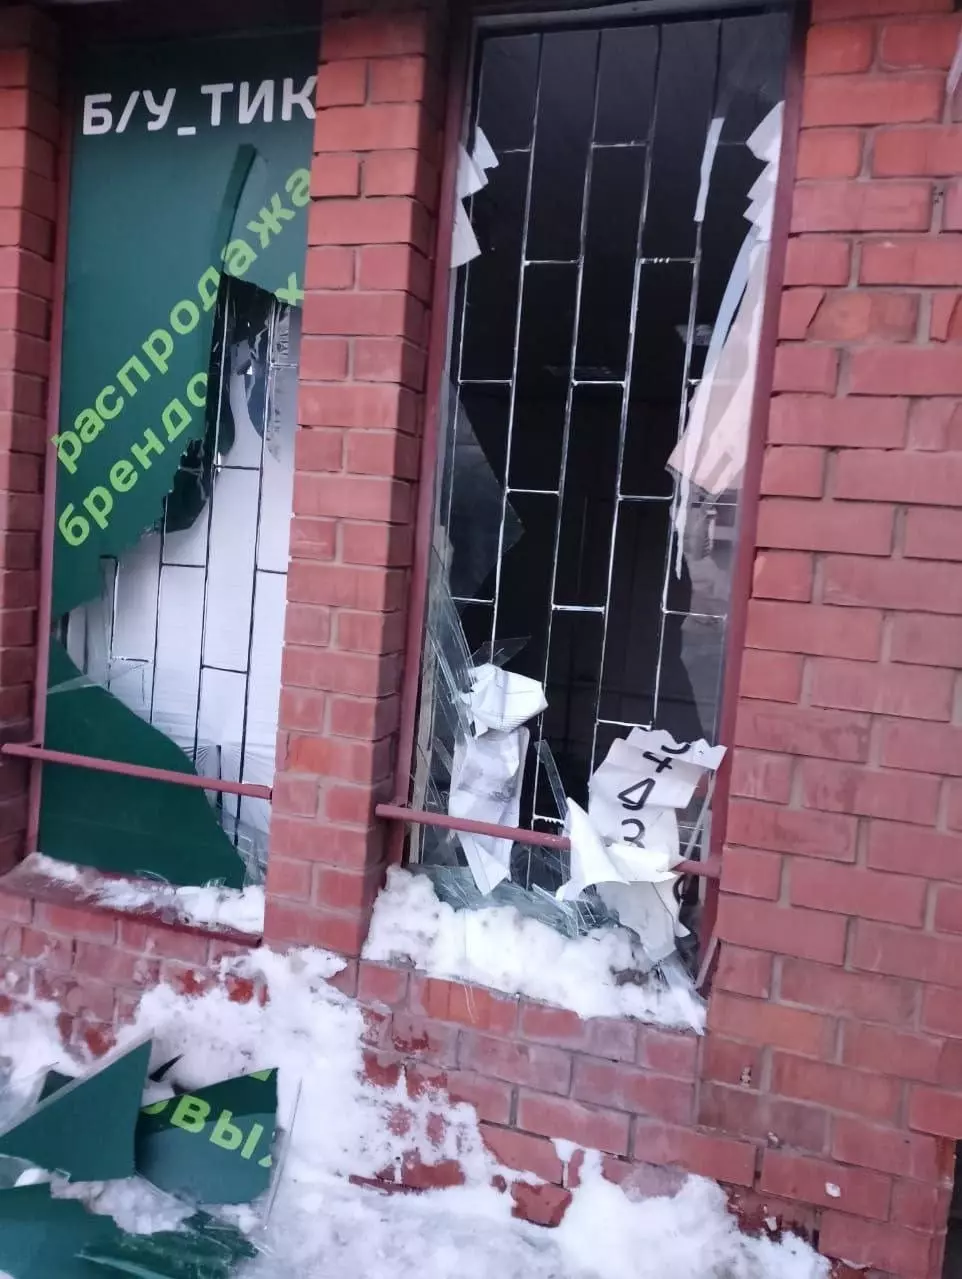 Так выглядит воронежский рынок после атаки БПЛА — в магазинах и на прилавках разбиты окна и повреждены витрины.